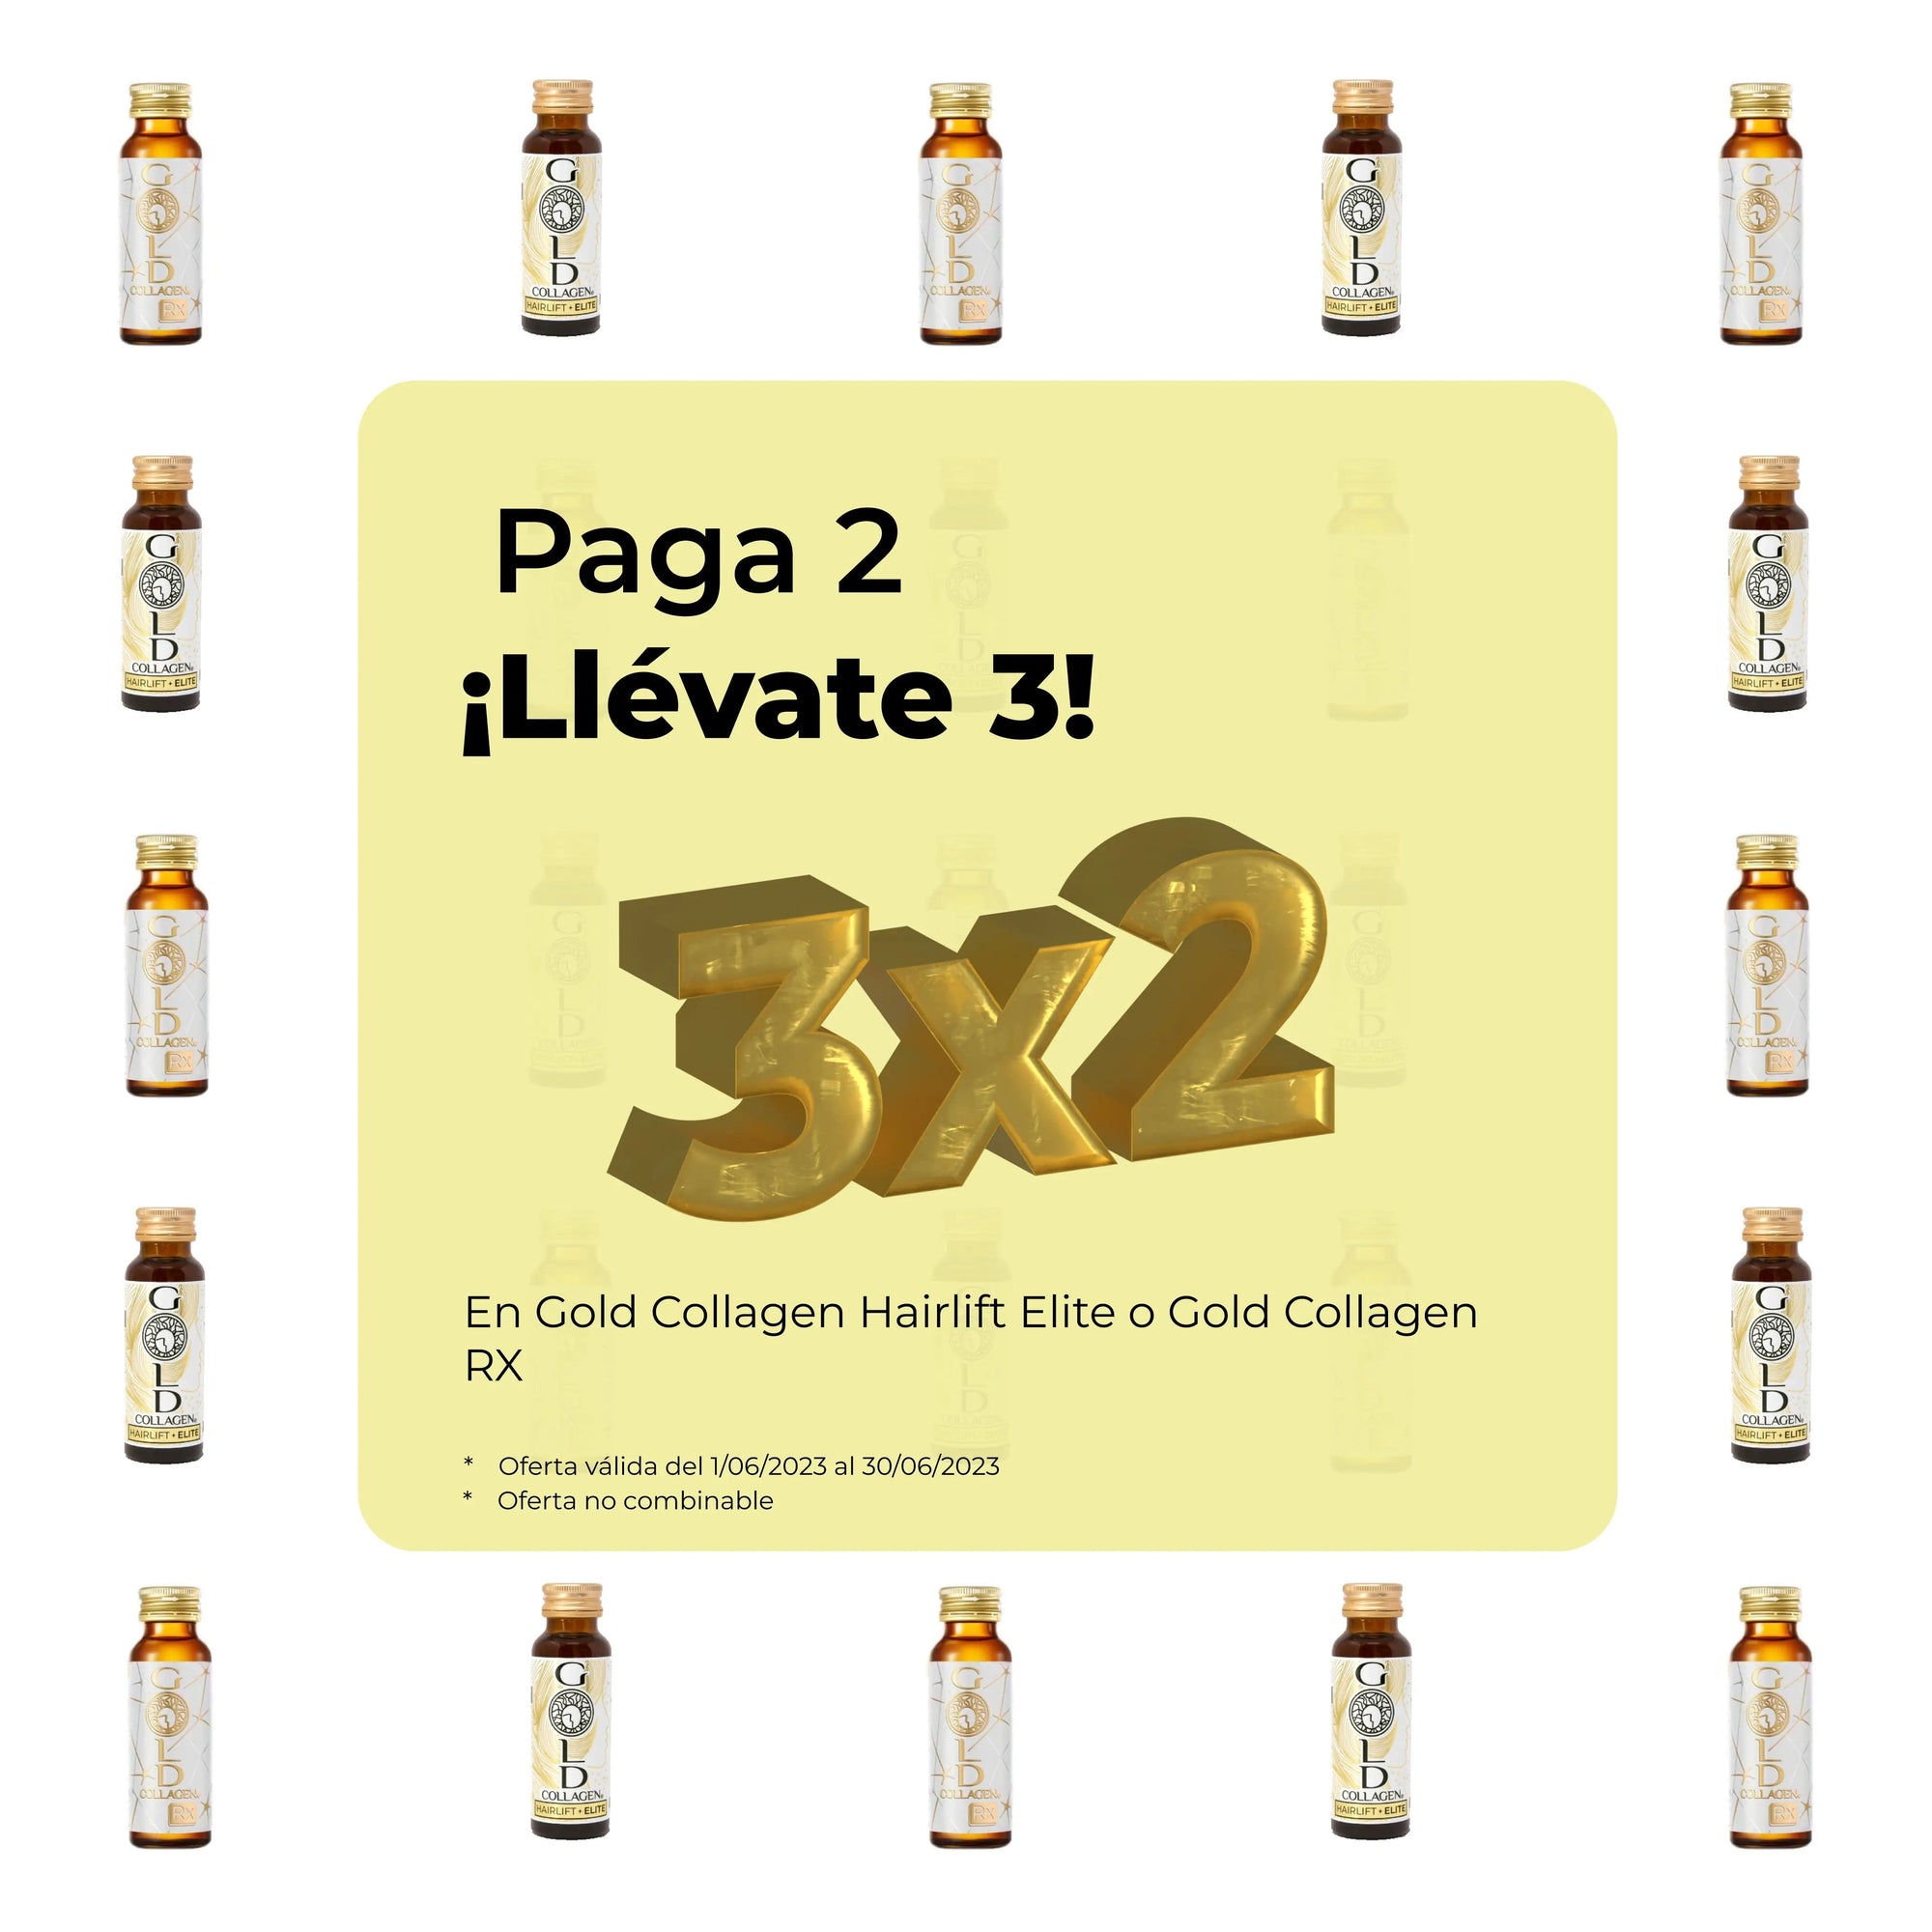 Gold Collagen Rx (3x2) - Centro de Estética Itziar y Mariángeles